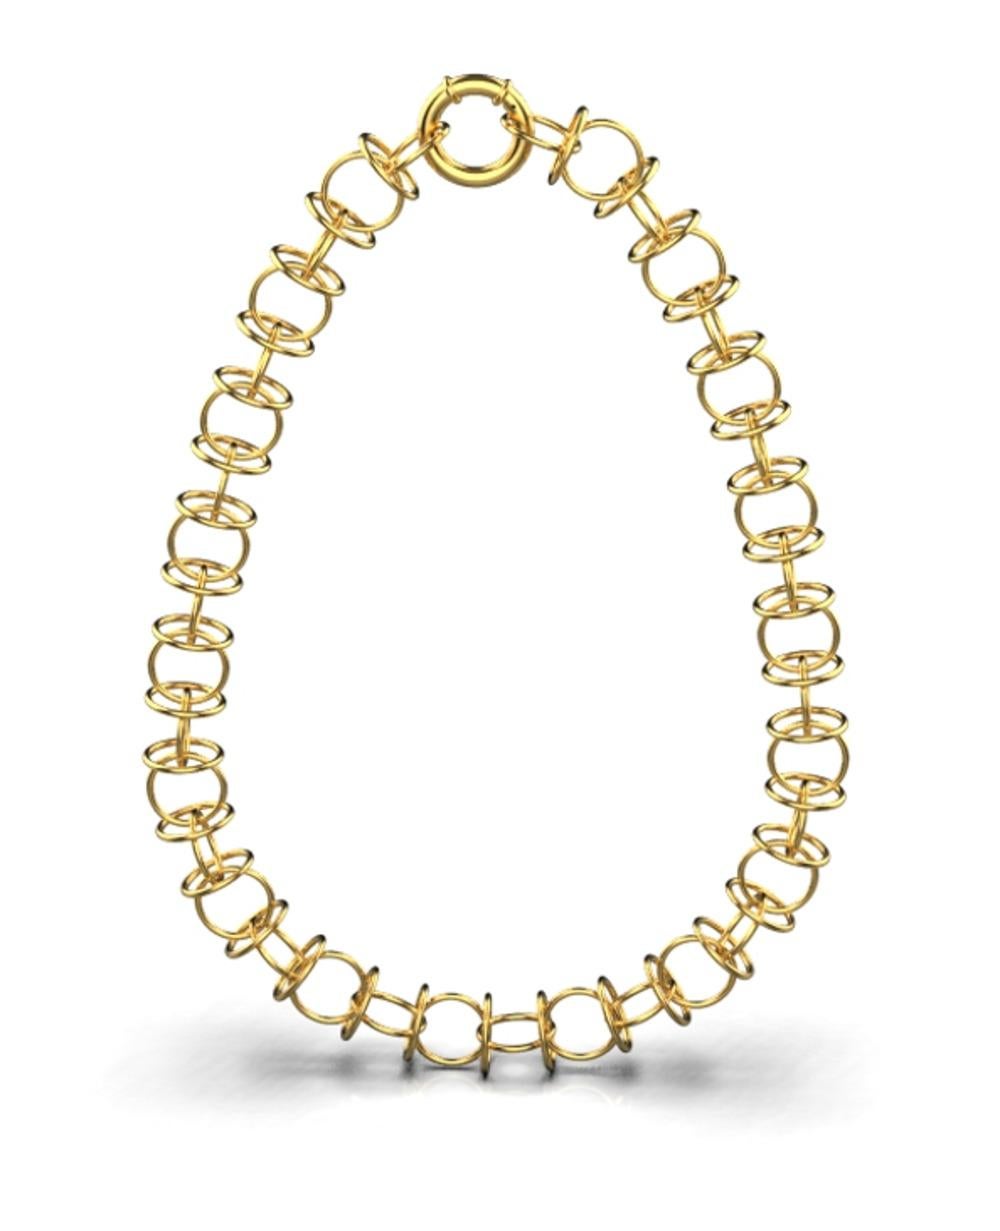 Détails du produit :

Le collier Looping est fabriqué à la main à la perfection avec des boucles circulaires métalliques précieuses assemblées pour créer une magnifique pièce d'apparat. Officiellement poinçonné par l'Assay Office, Royaume-Uni. Cet